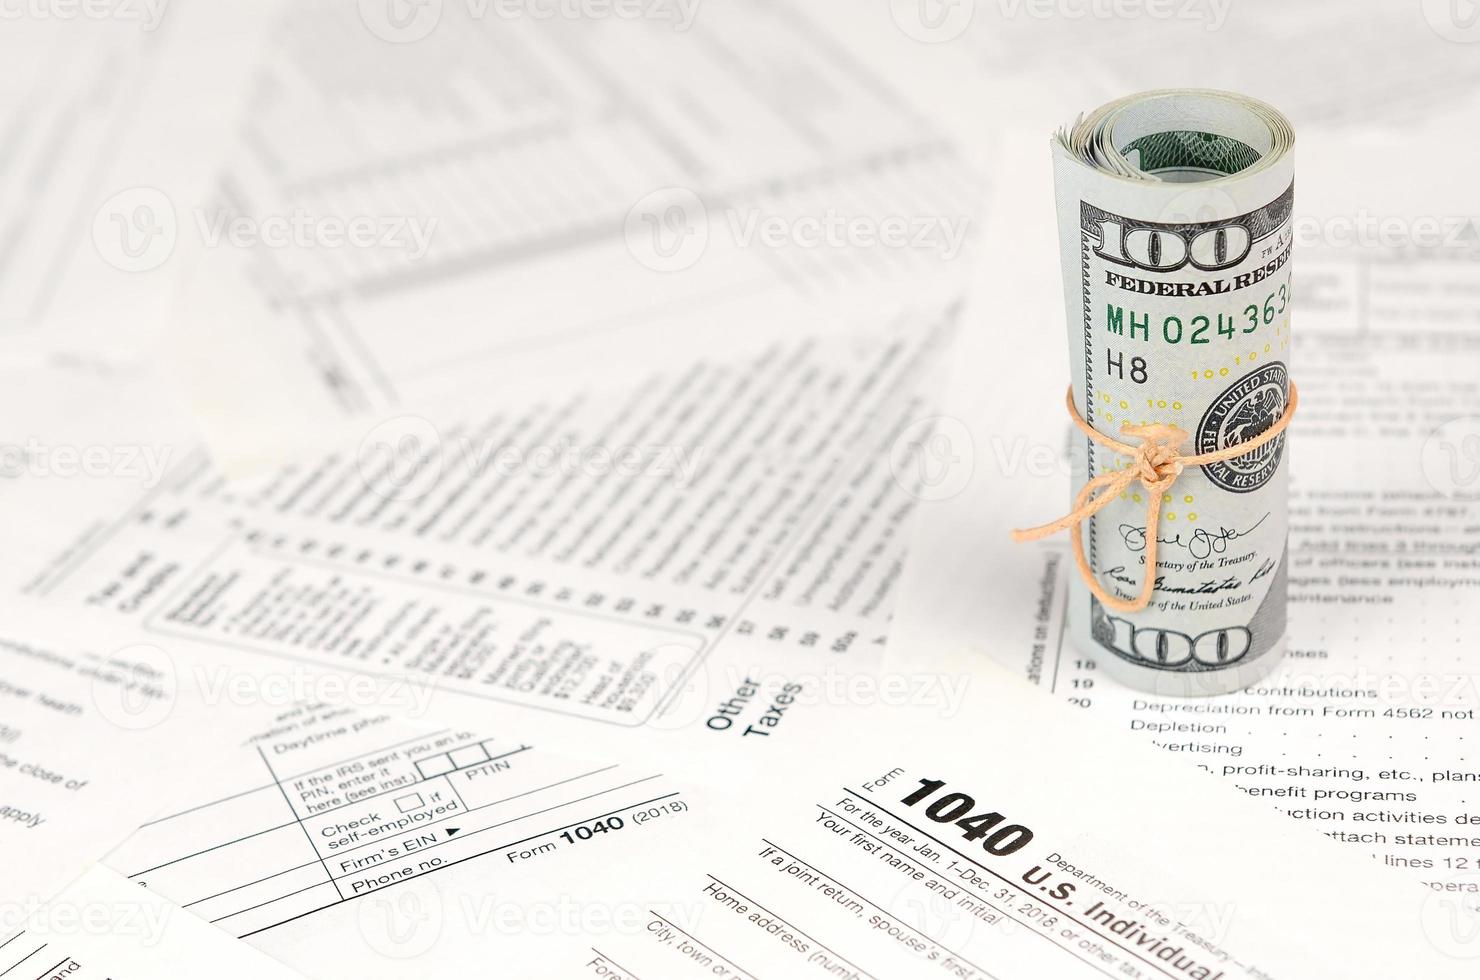 1040 individuelles Einkommensteuererklärungsformular mit einer Rolle amerikanischer Dollar-Banknoten foto